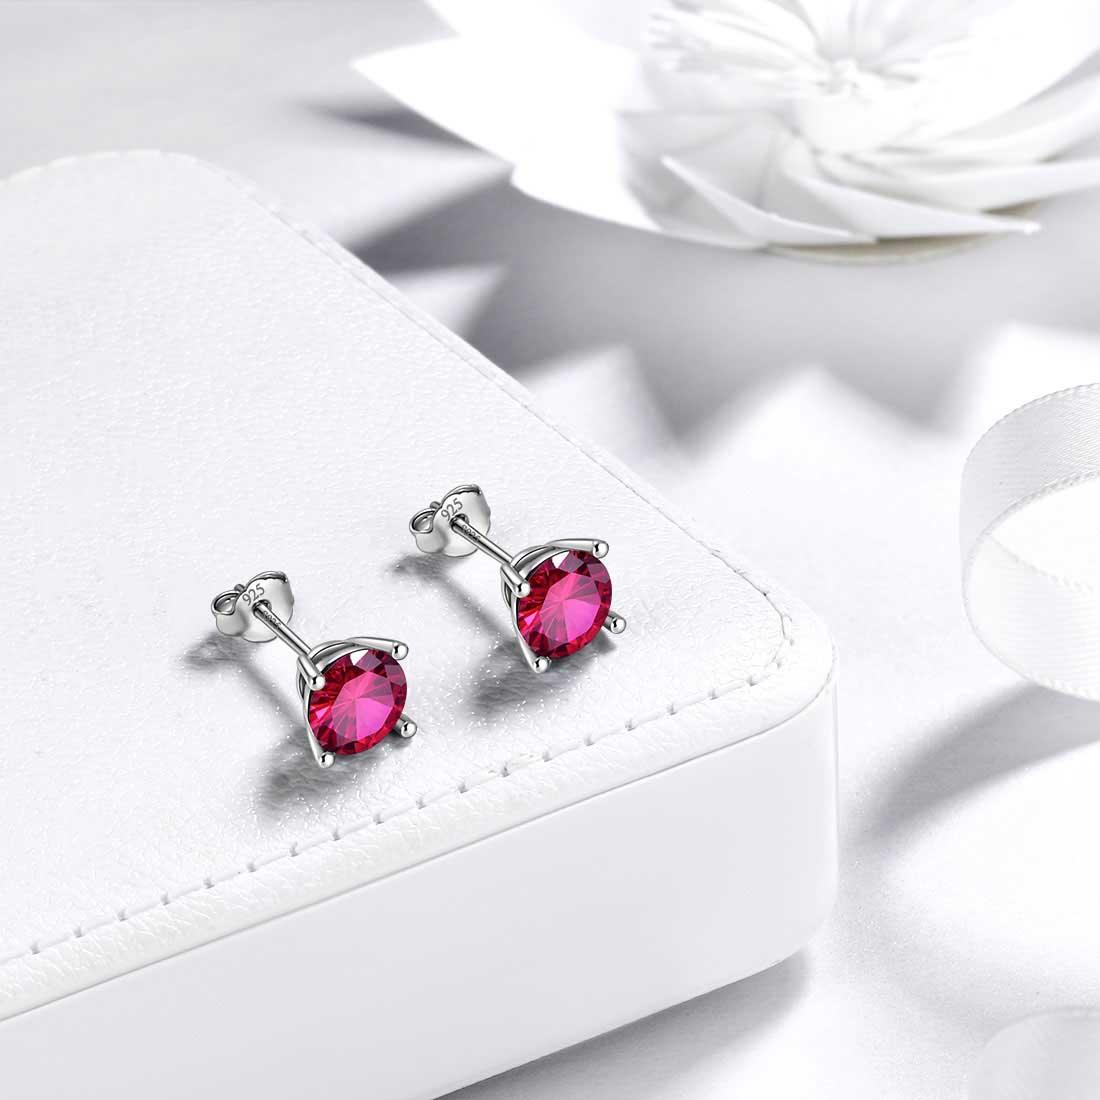 12 Birthstone Women Stud Earrings Sterling Silver - Earrings - Aurora Tears Jewelry